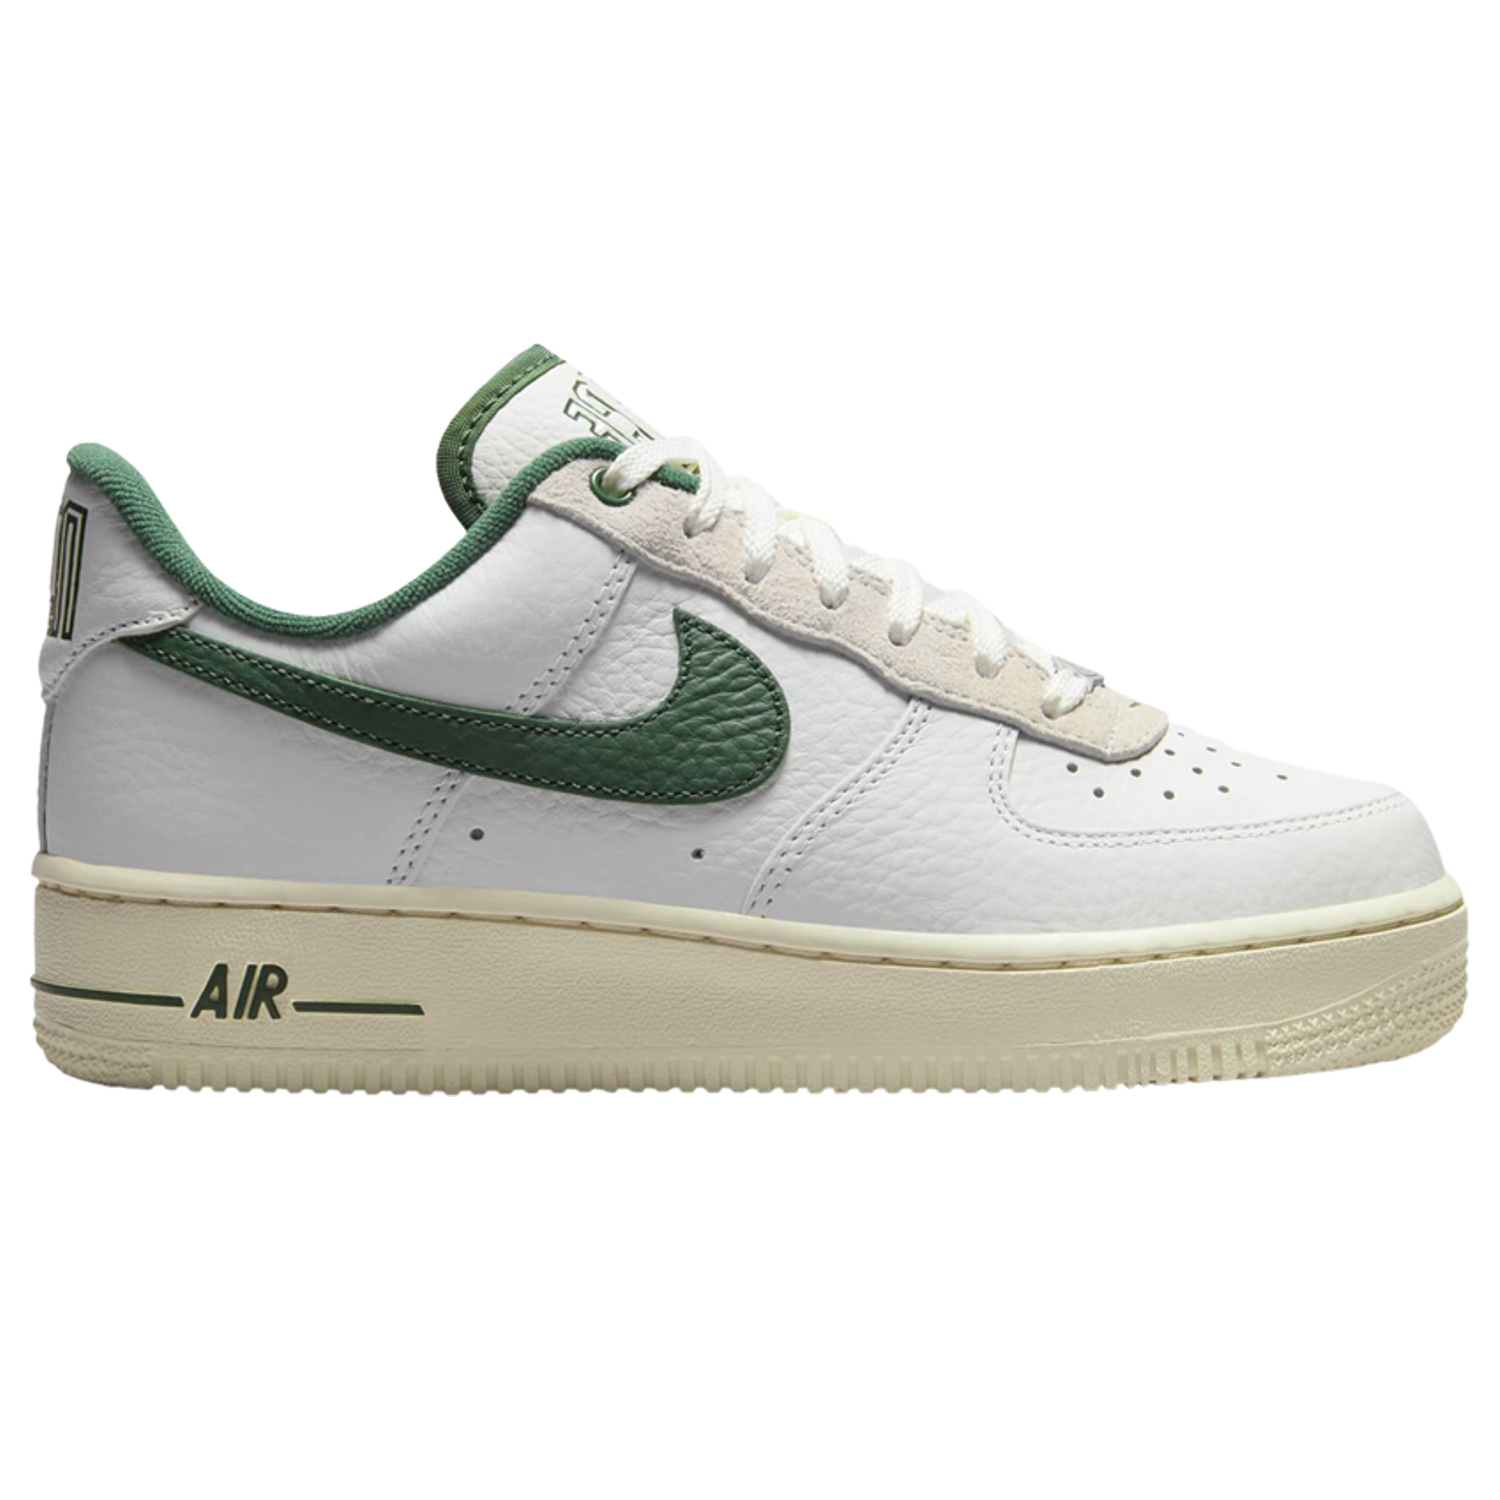 Кроссовки Nike Wmns Air Force 1 '07 LX 'Command Force - Gorge Green', Белый цена и фото